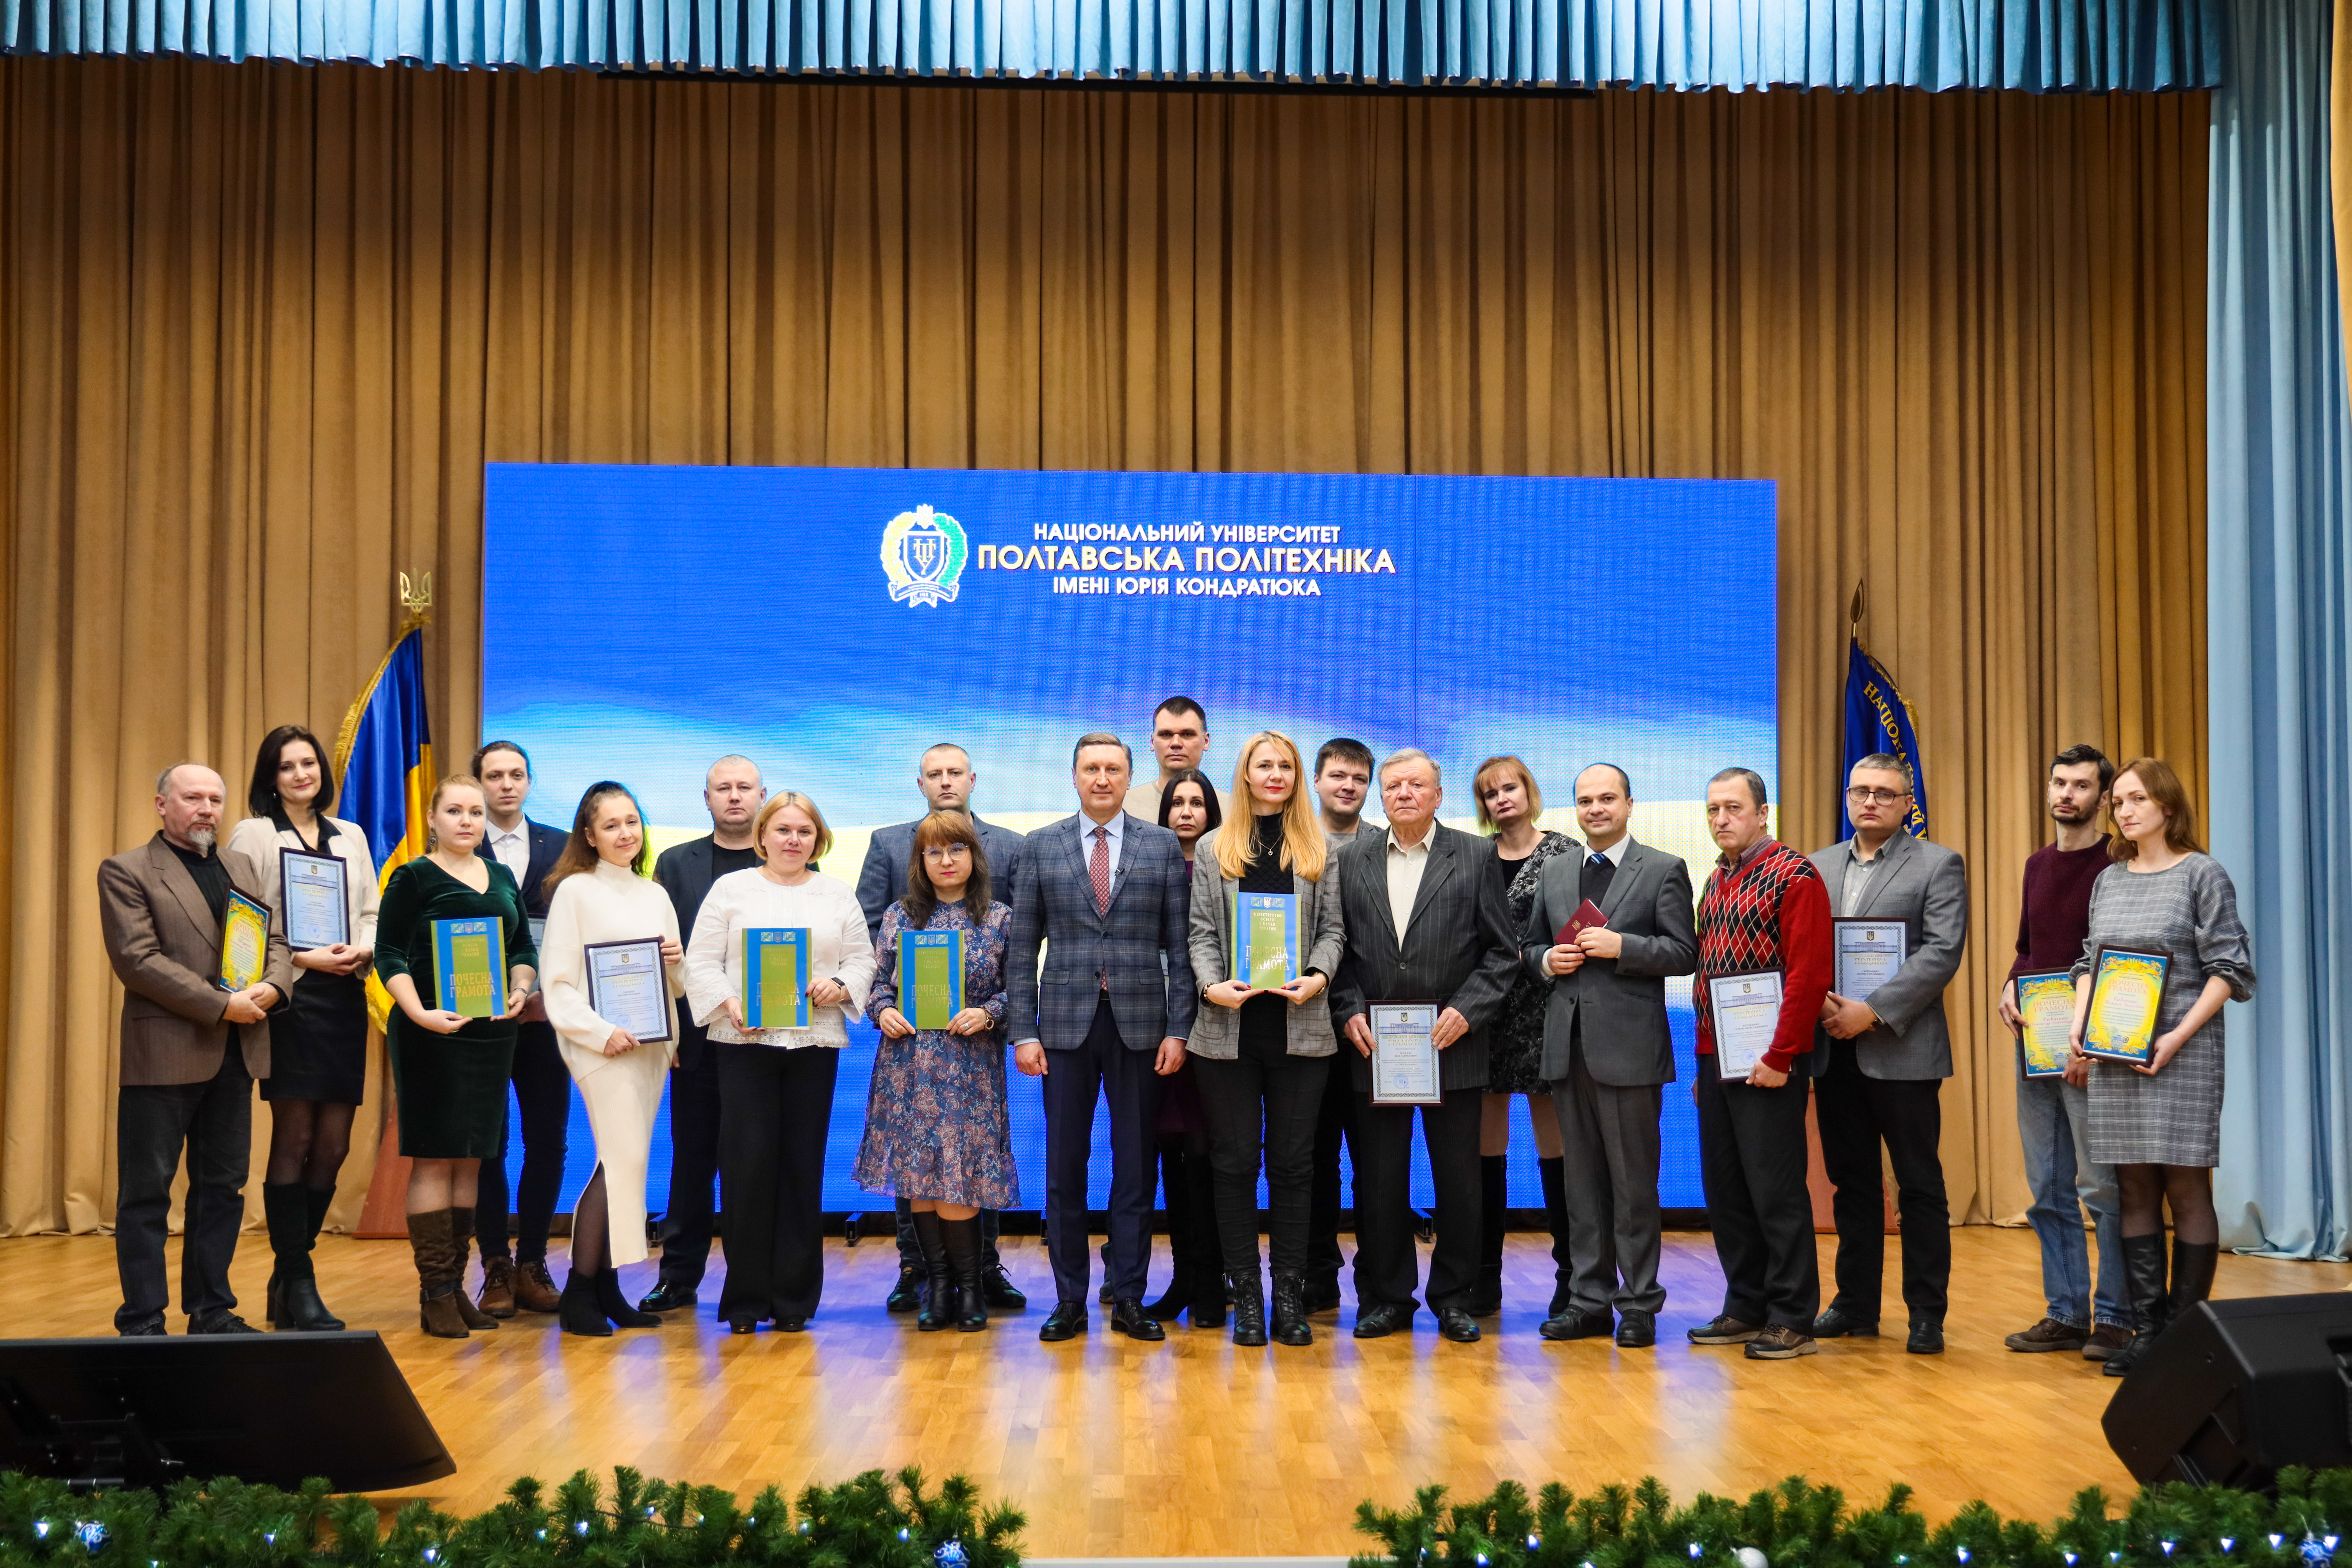 16 співробітників Полтавської політехніки нагороджені відзнаками Міністерства освіти і науки України